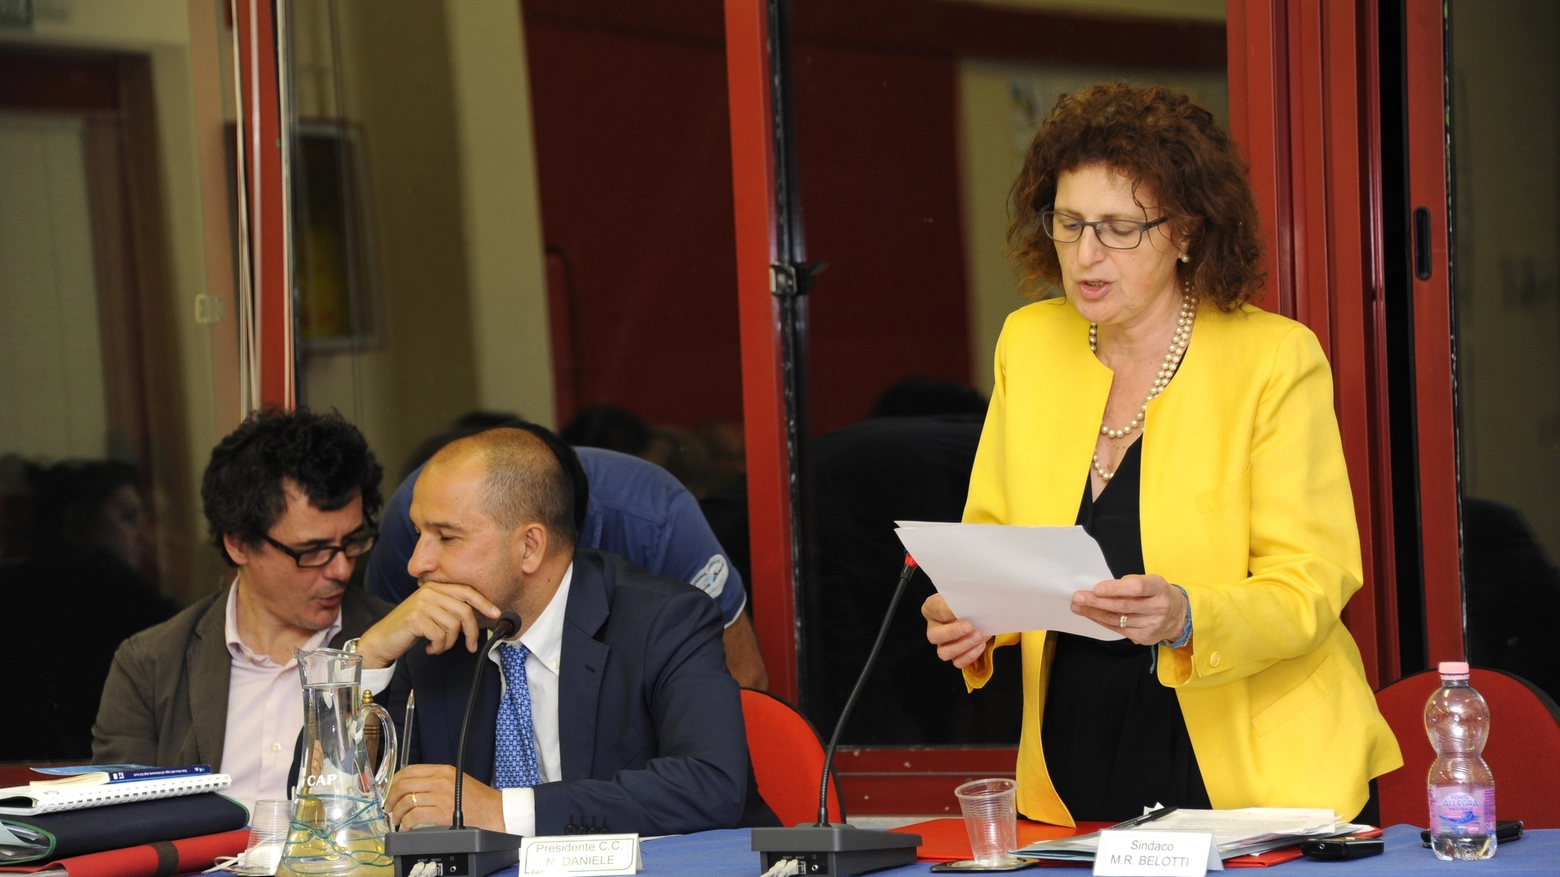  Il sindaco Maria Rosa Belotti parla in Consiglio